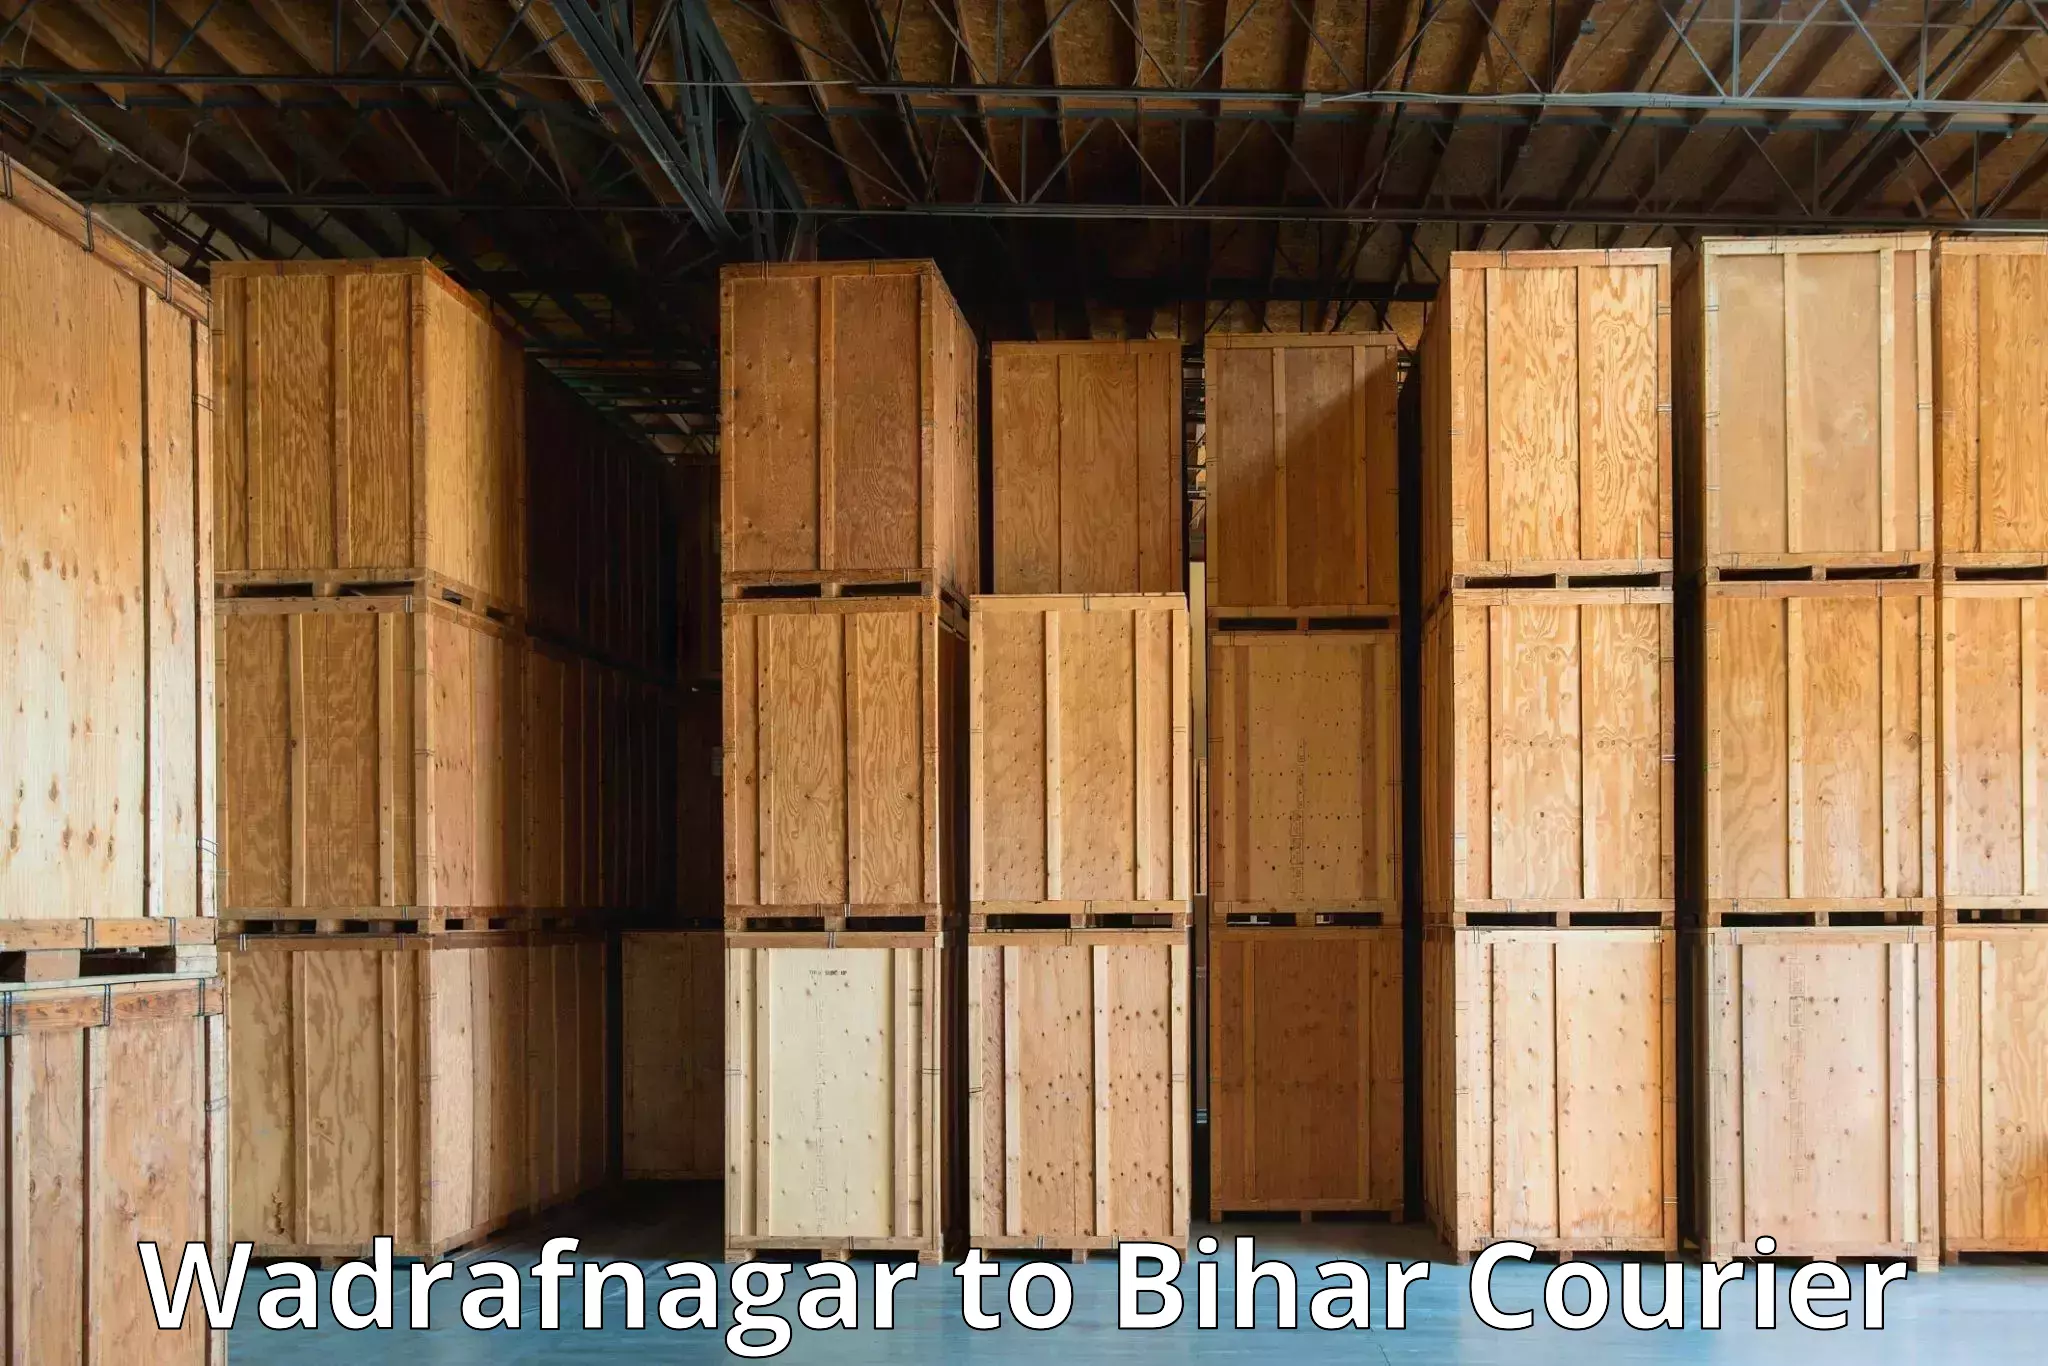 Nationwide parcel services Wadrafnagar to Tribeniganj